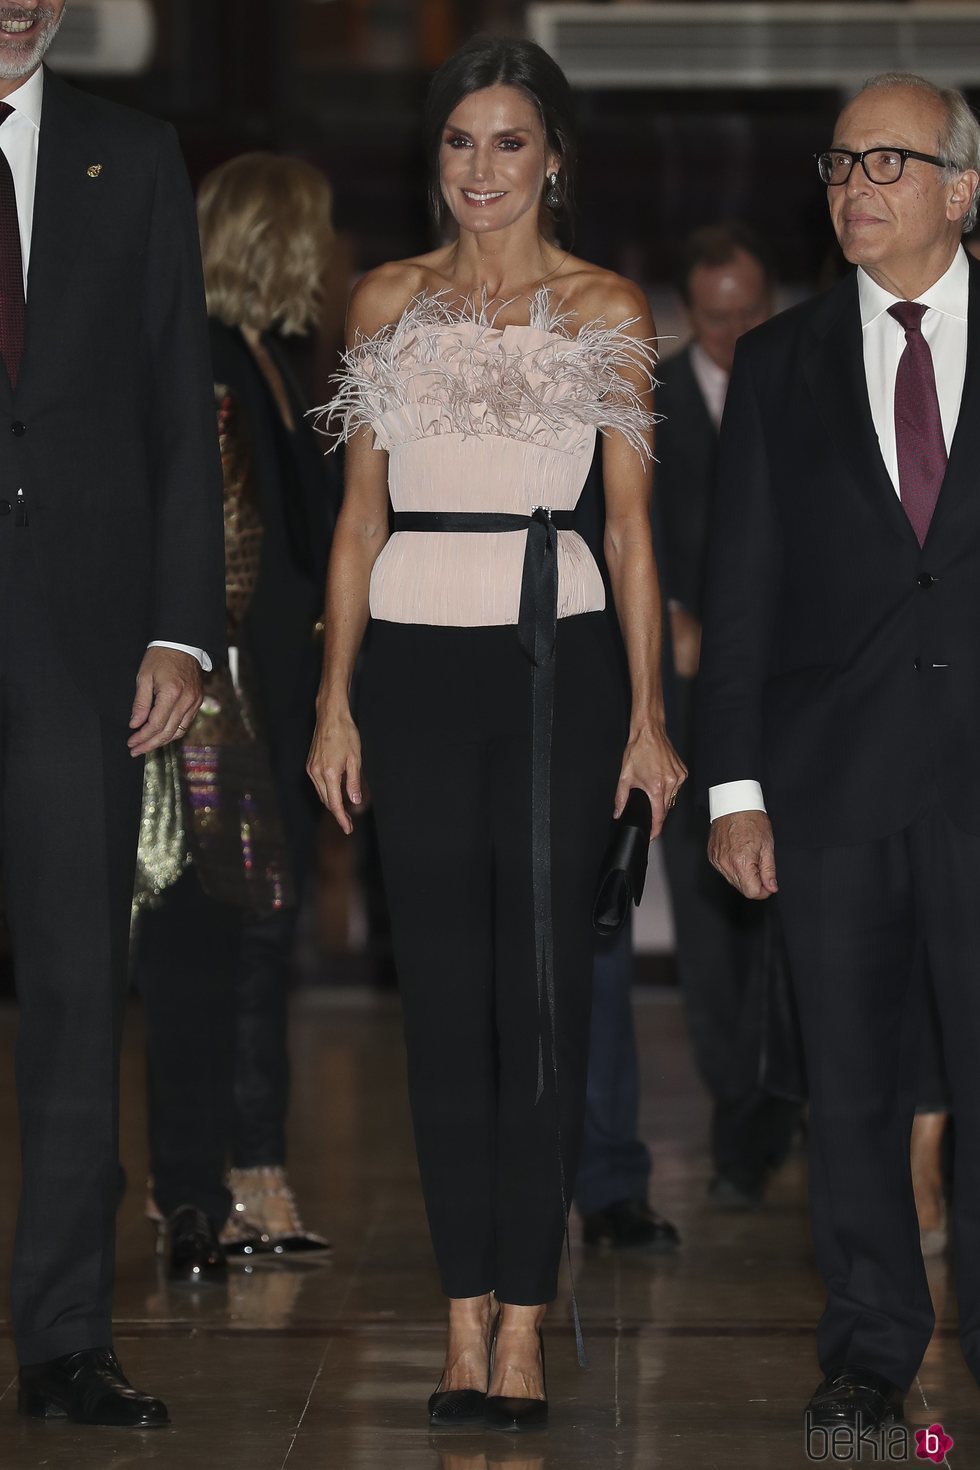 La Reina Letizia luce un top de plumas en el XXVIII Concierto de los Premios Princesa de Asturias